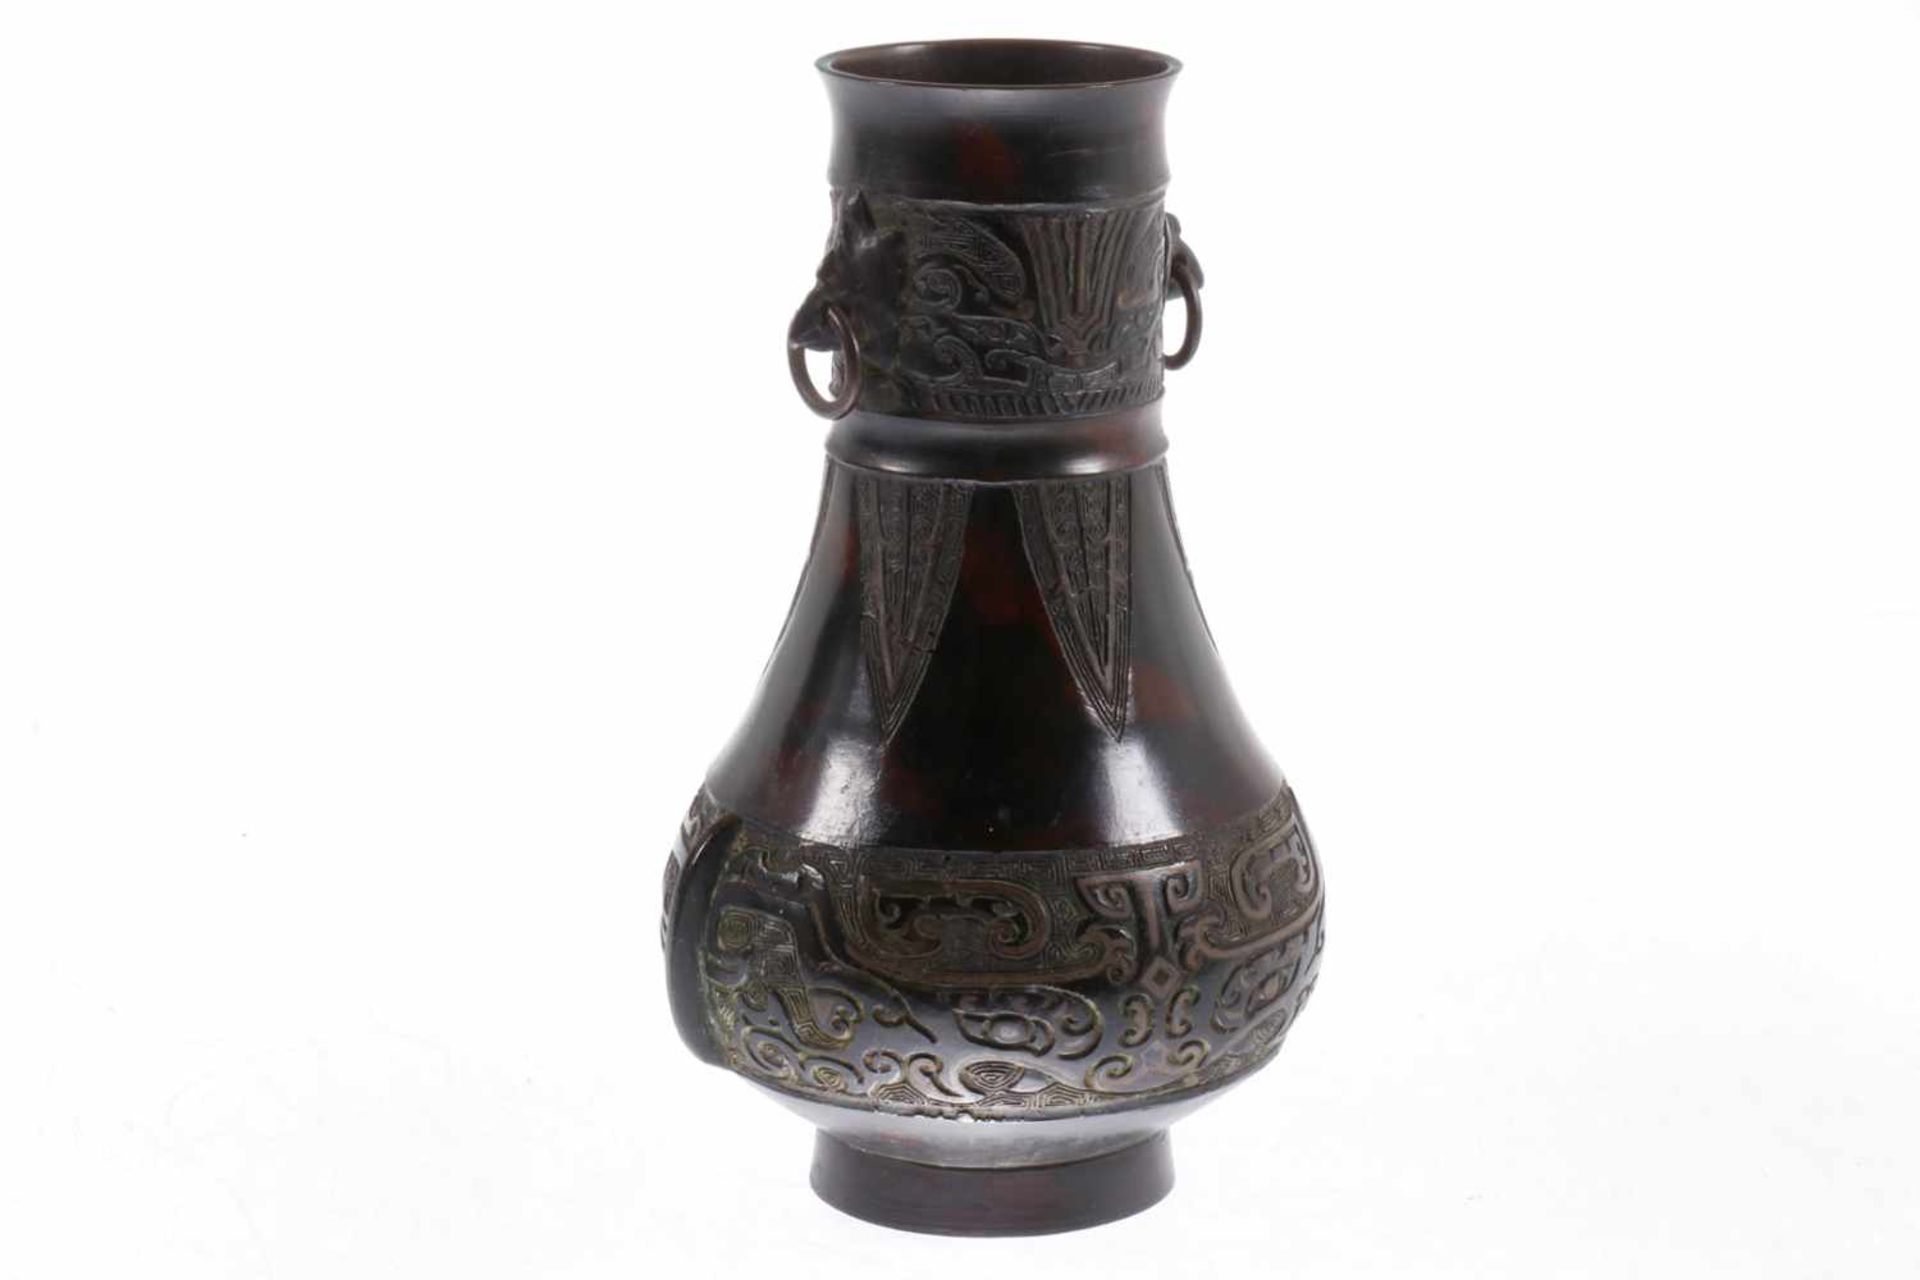 Japanisches Bronze-Vase, feine Reliefarbeit, mit 2 Ringen als Henkel, um 1900 oder älter, H 24 cm, Z